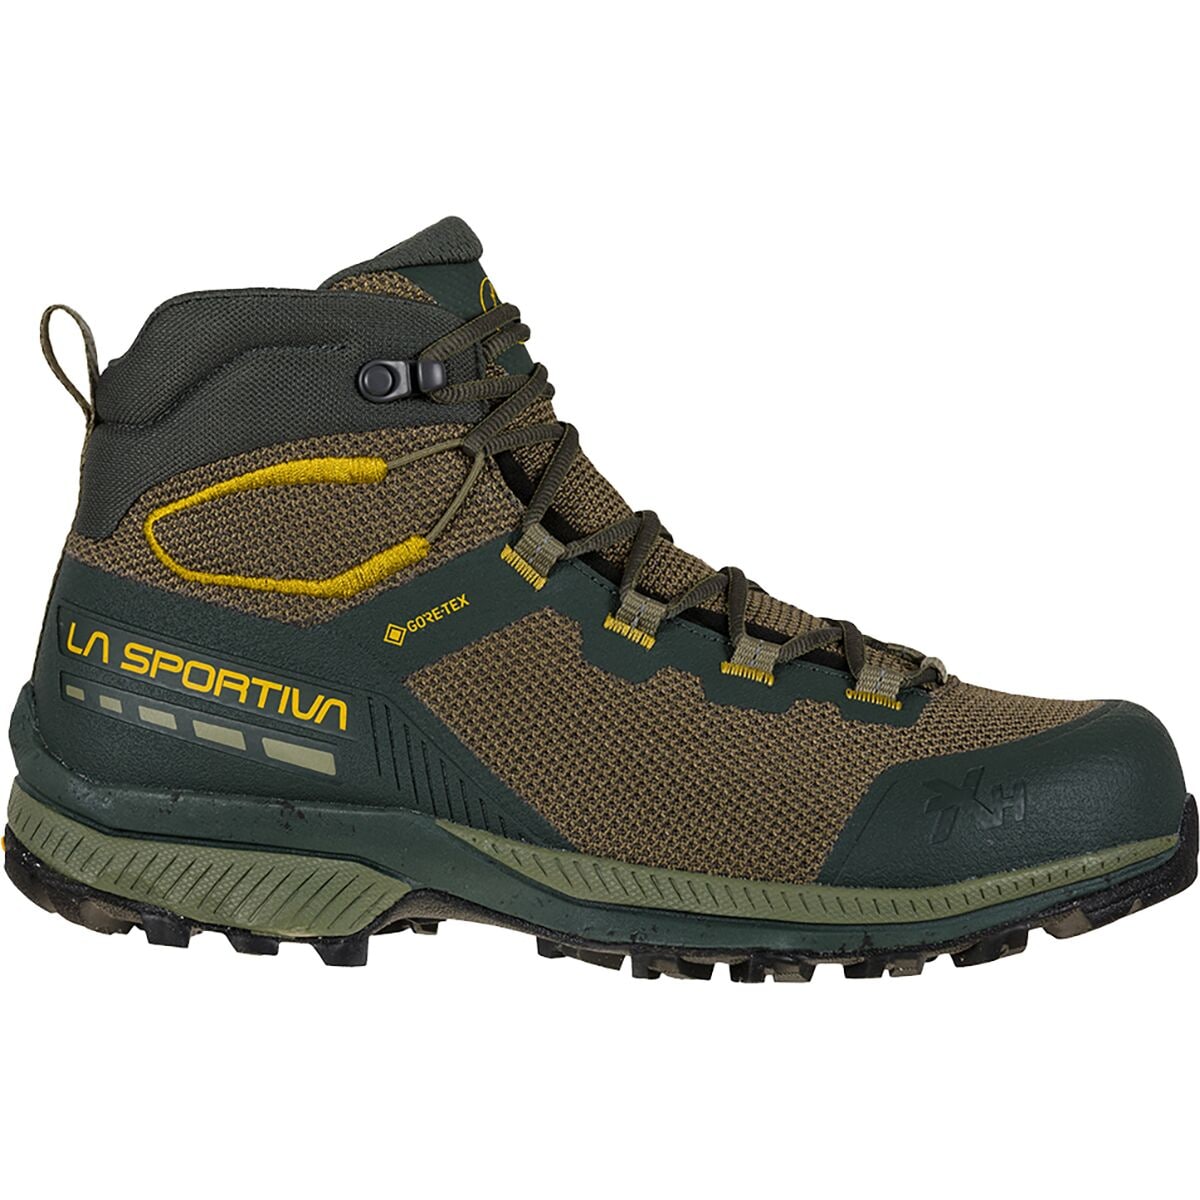 La Sportiva TX Hike Mid GTX Hiking Boot - Men's